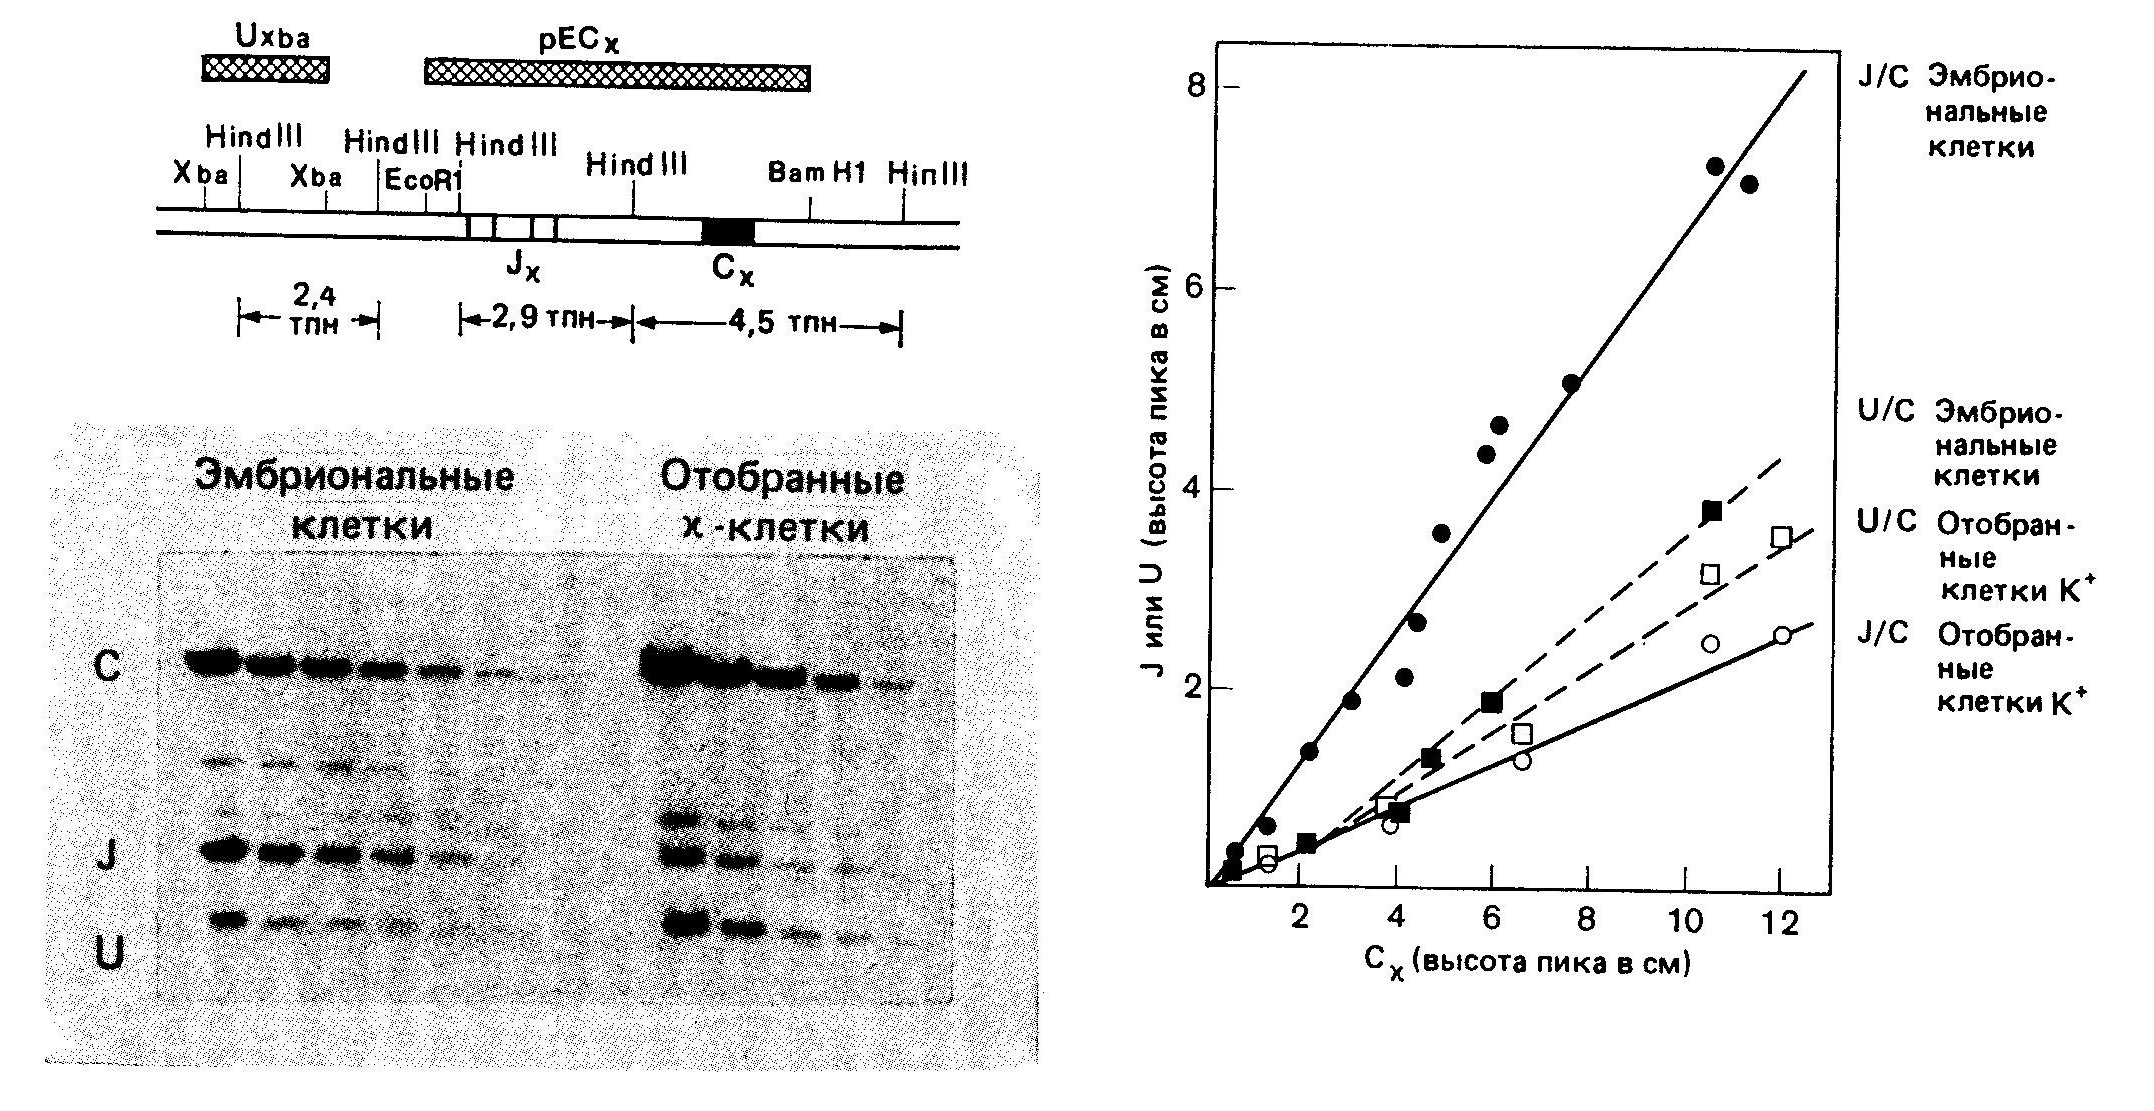 Результаты блоттинга по Саузерну, согласующиеся с моделью рекомбинации за счет НОСХ в нормальных  
лимфоцитах.